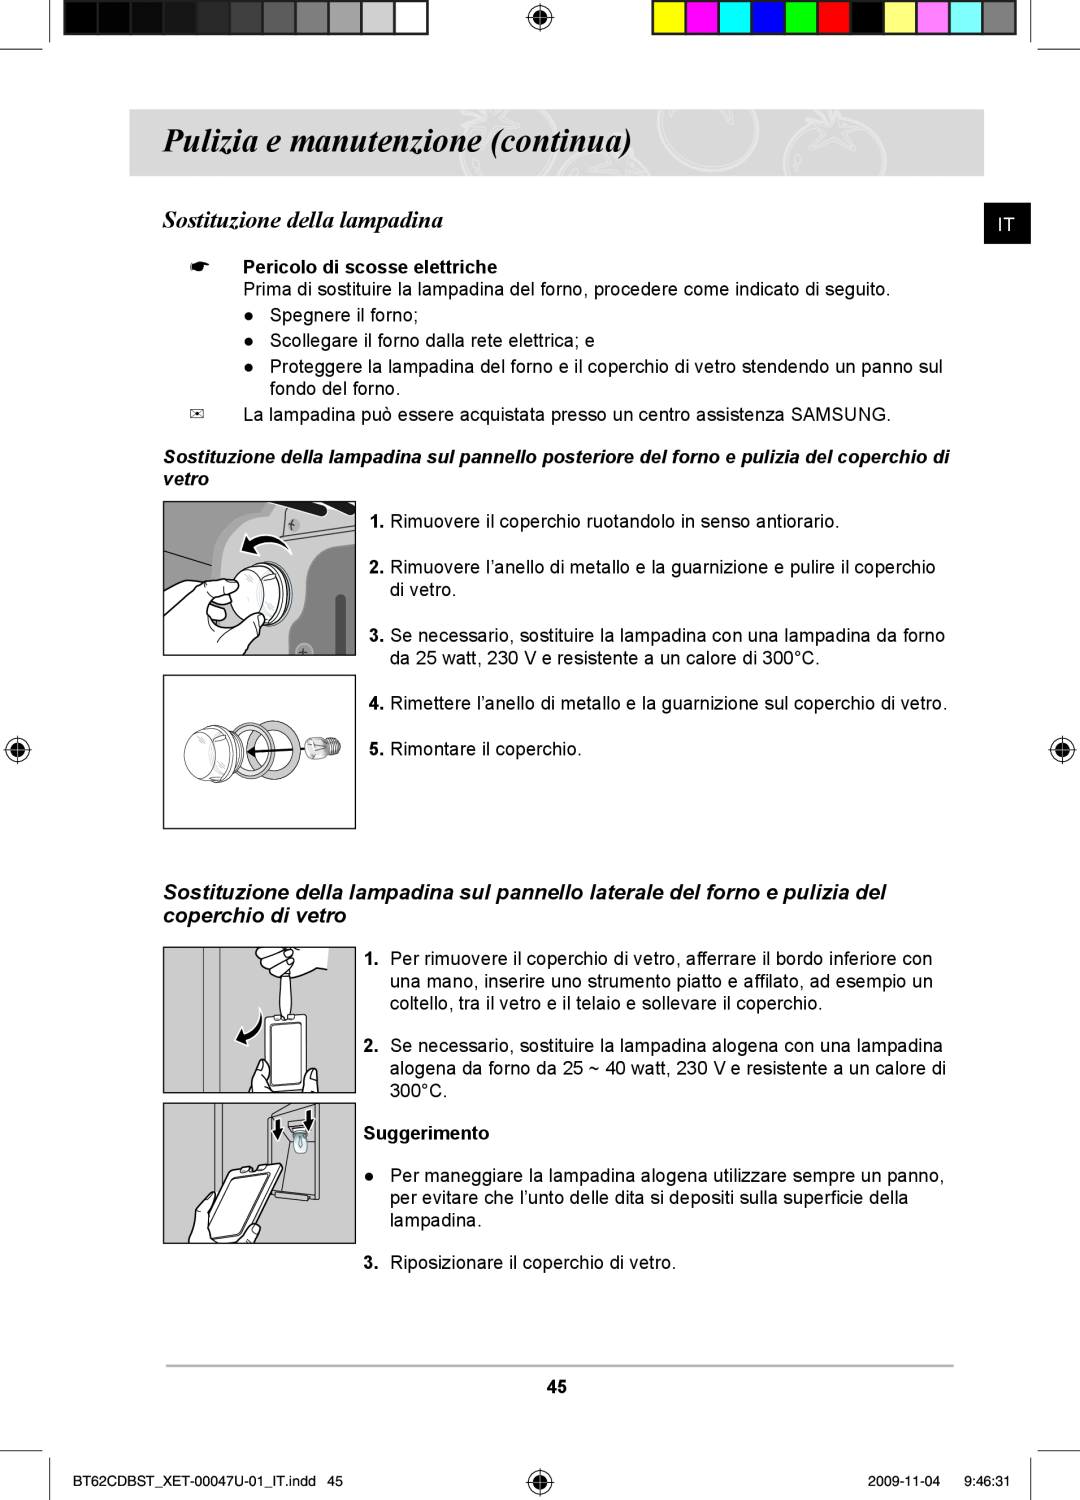 Samsung BT62CDBST/XET manual Sostituzione della lampadina, Pericolo di scosse elettriche, Suggerimento 